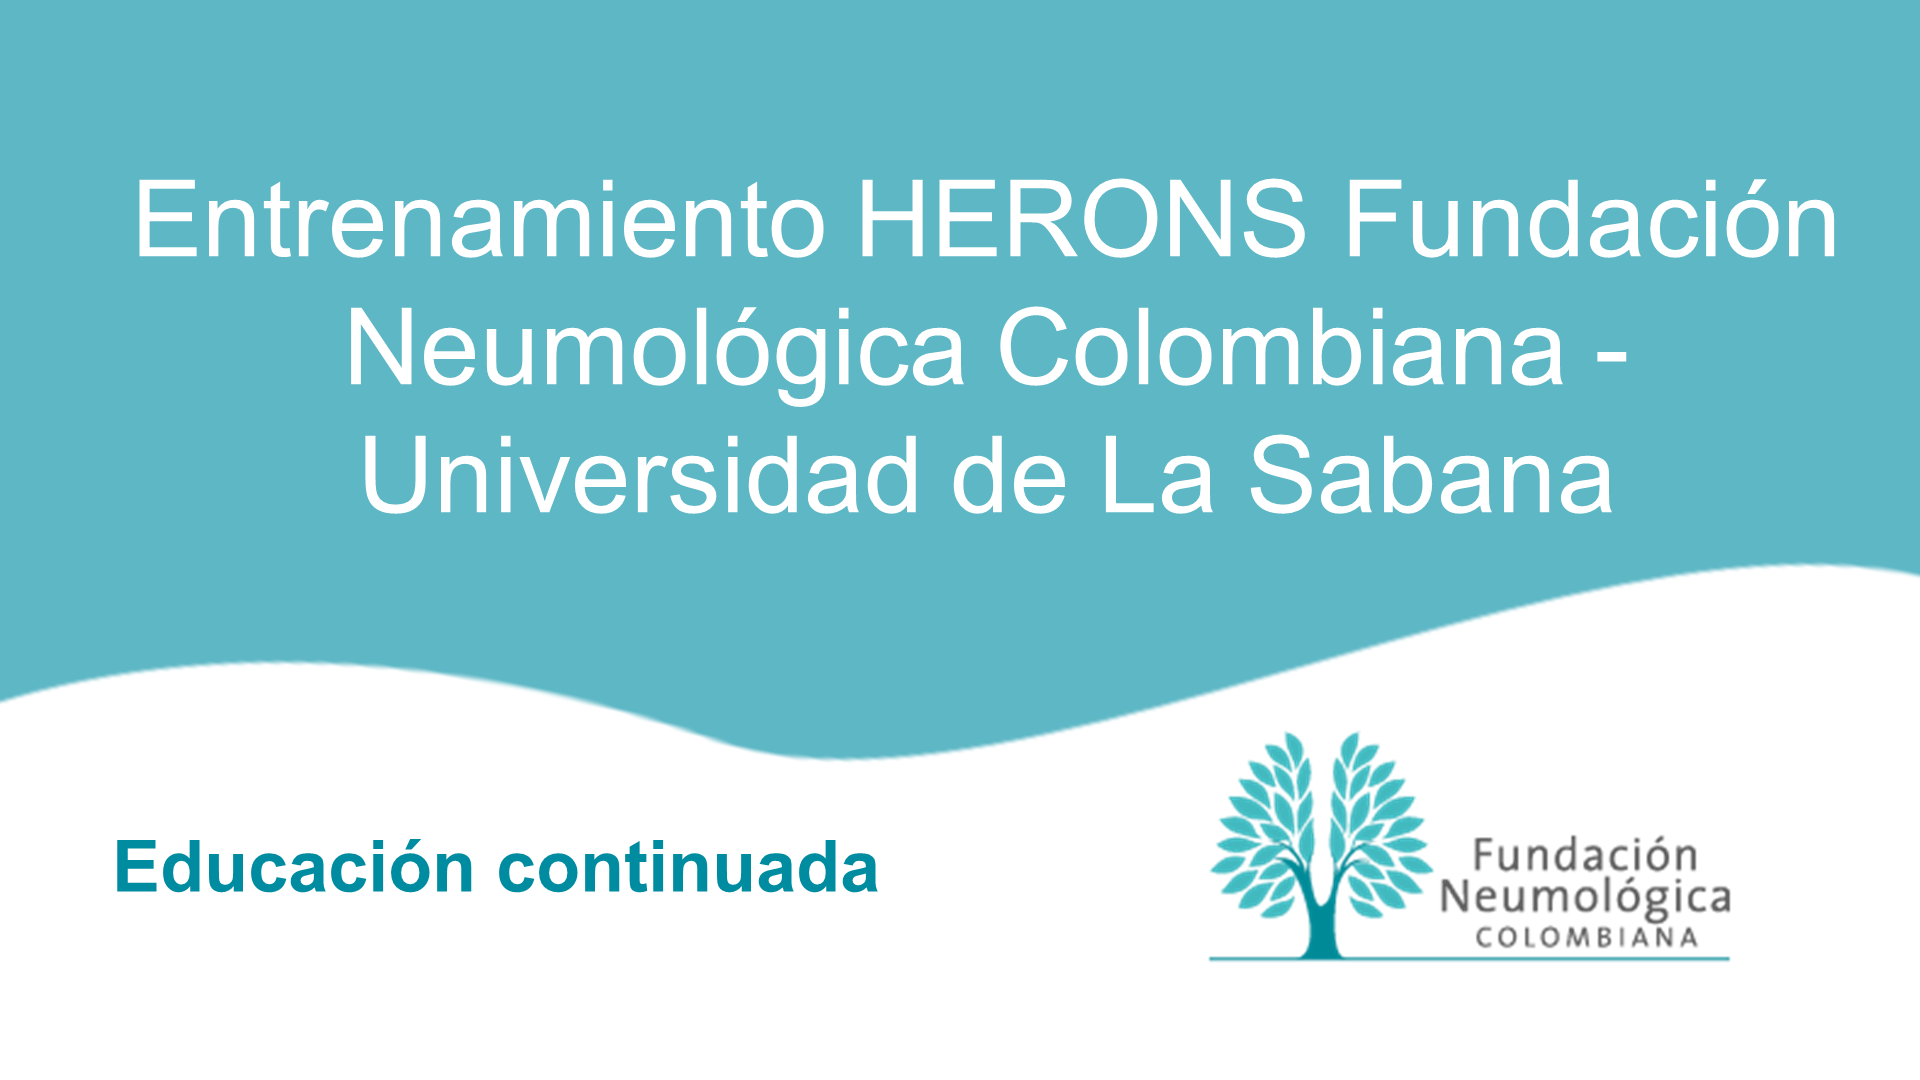 Entrenamiento HERONS Fundación Neumológica Colombiana - Universidad de La Sabana